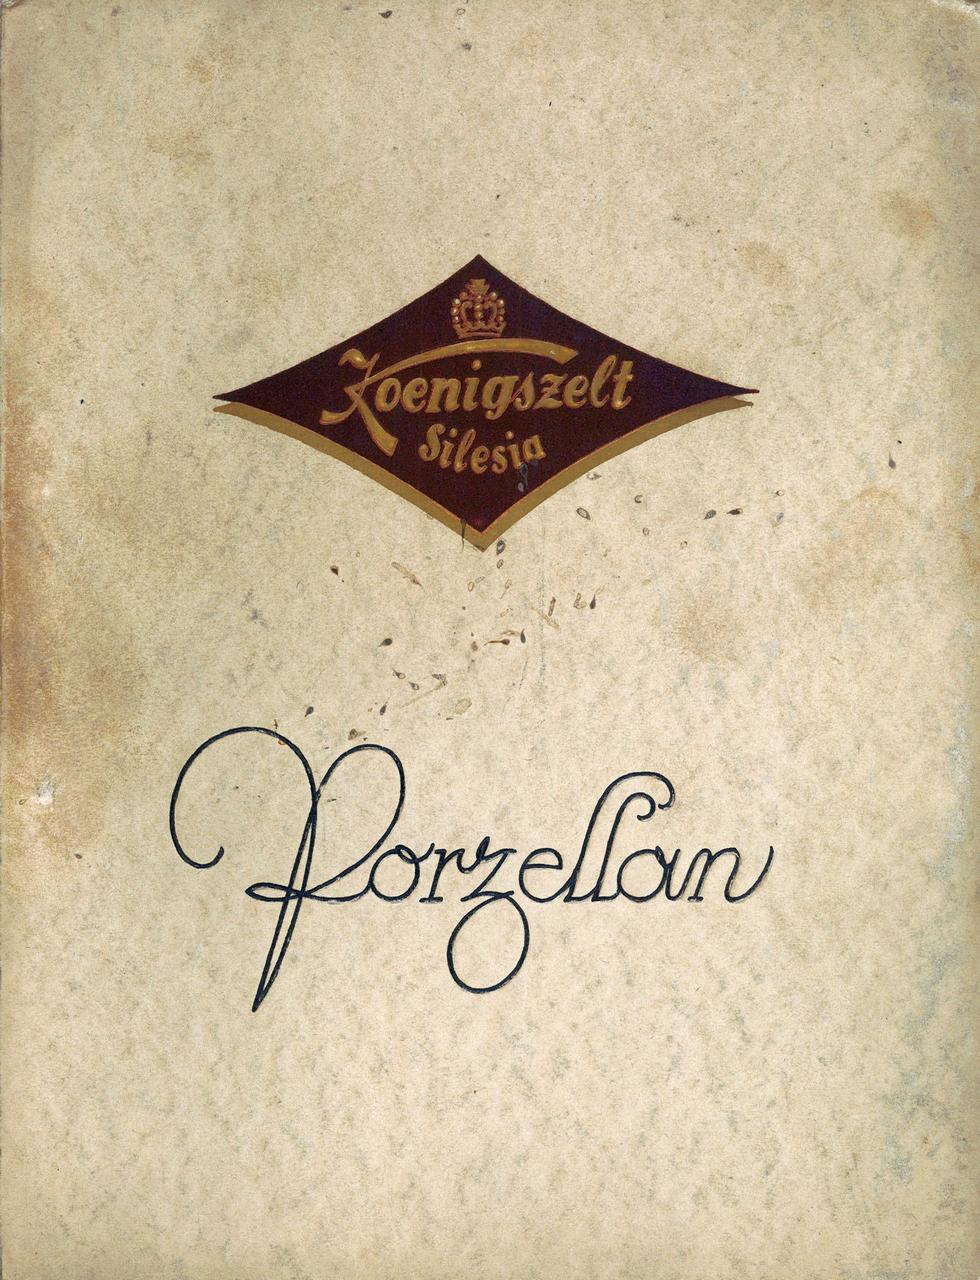 335. Reklama – Katalog wyrobów Porzellanfabrik Königszelt, 1927